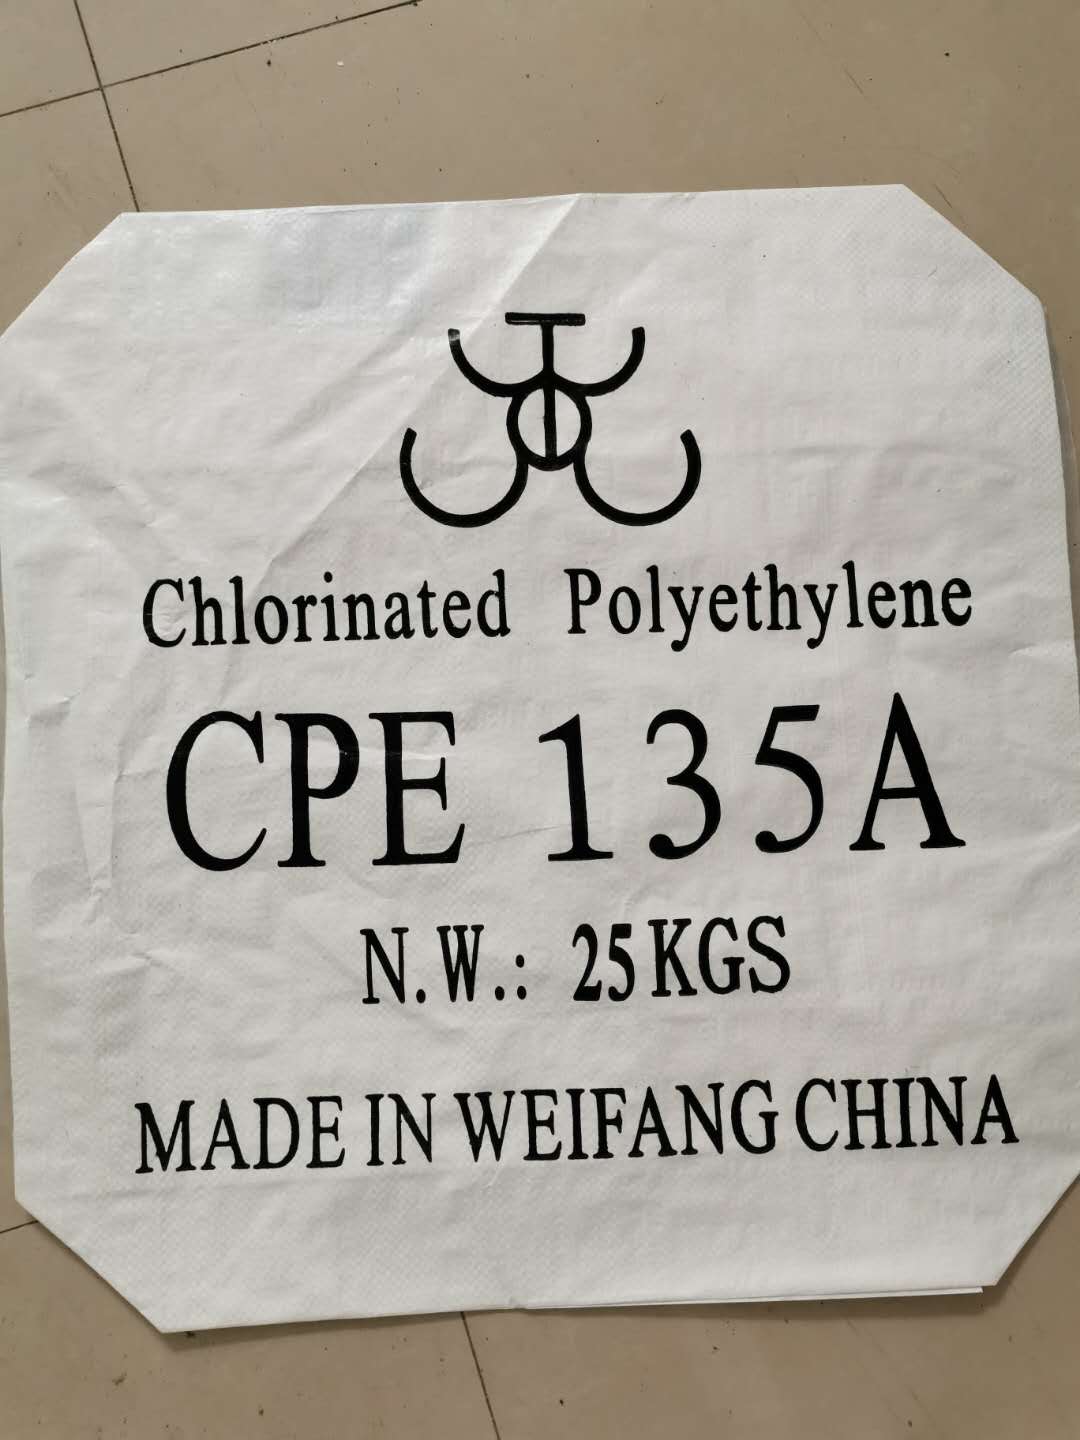 Lad mig vide: hvad er CPE/chloreret polyethylen?